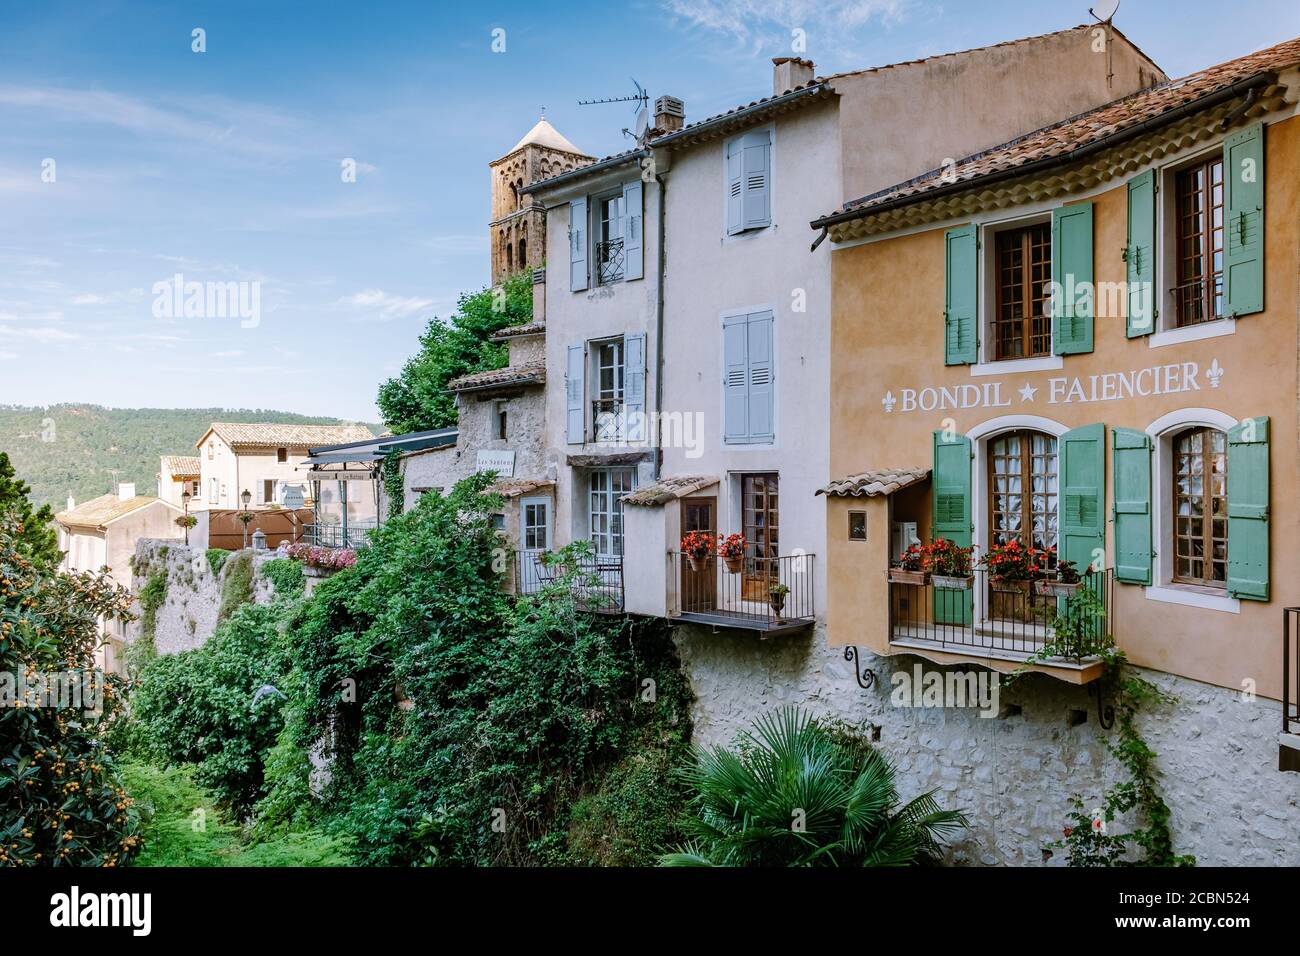 Le village de Moustiers-Sainte-Marie, Provence, France juin 2020 Banque D'Images